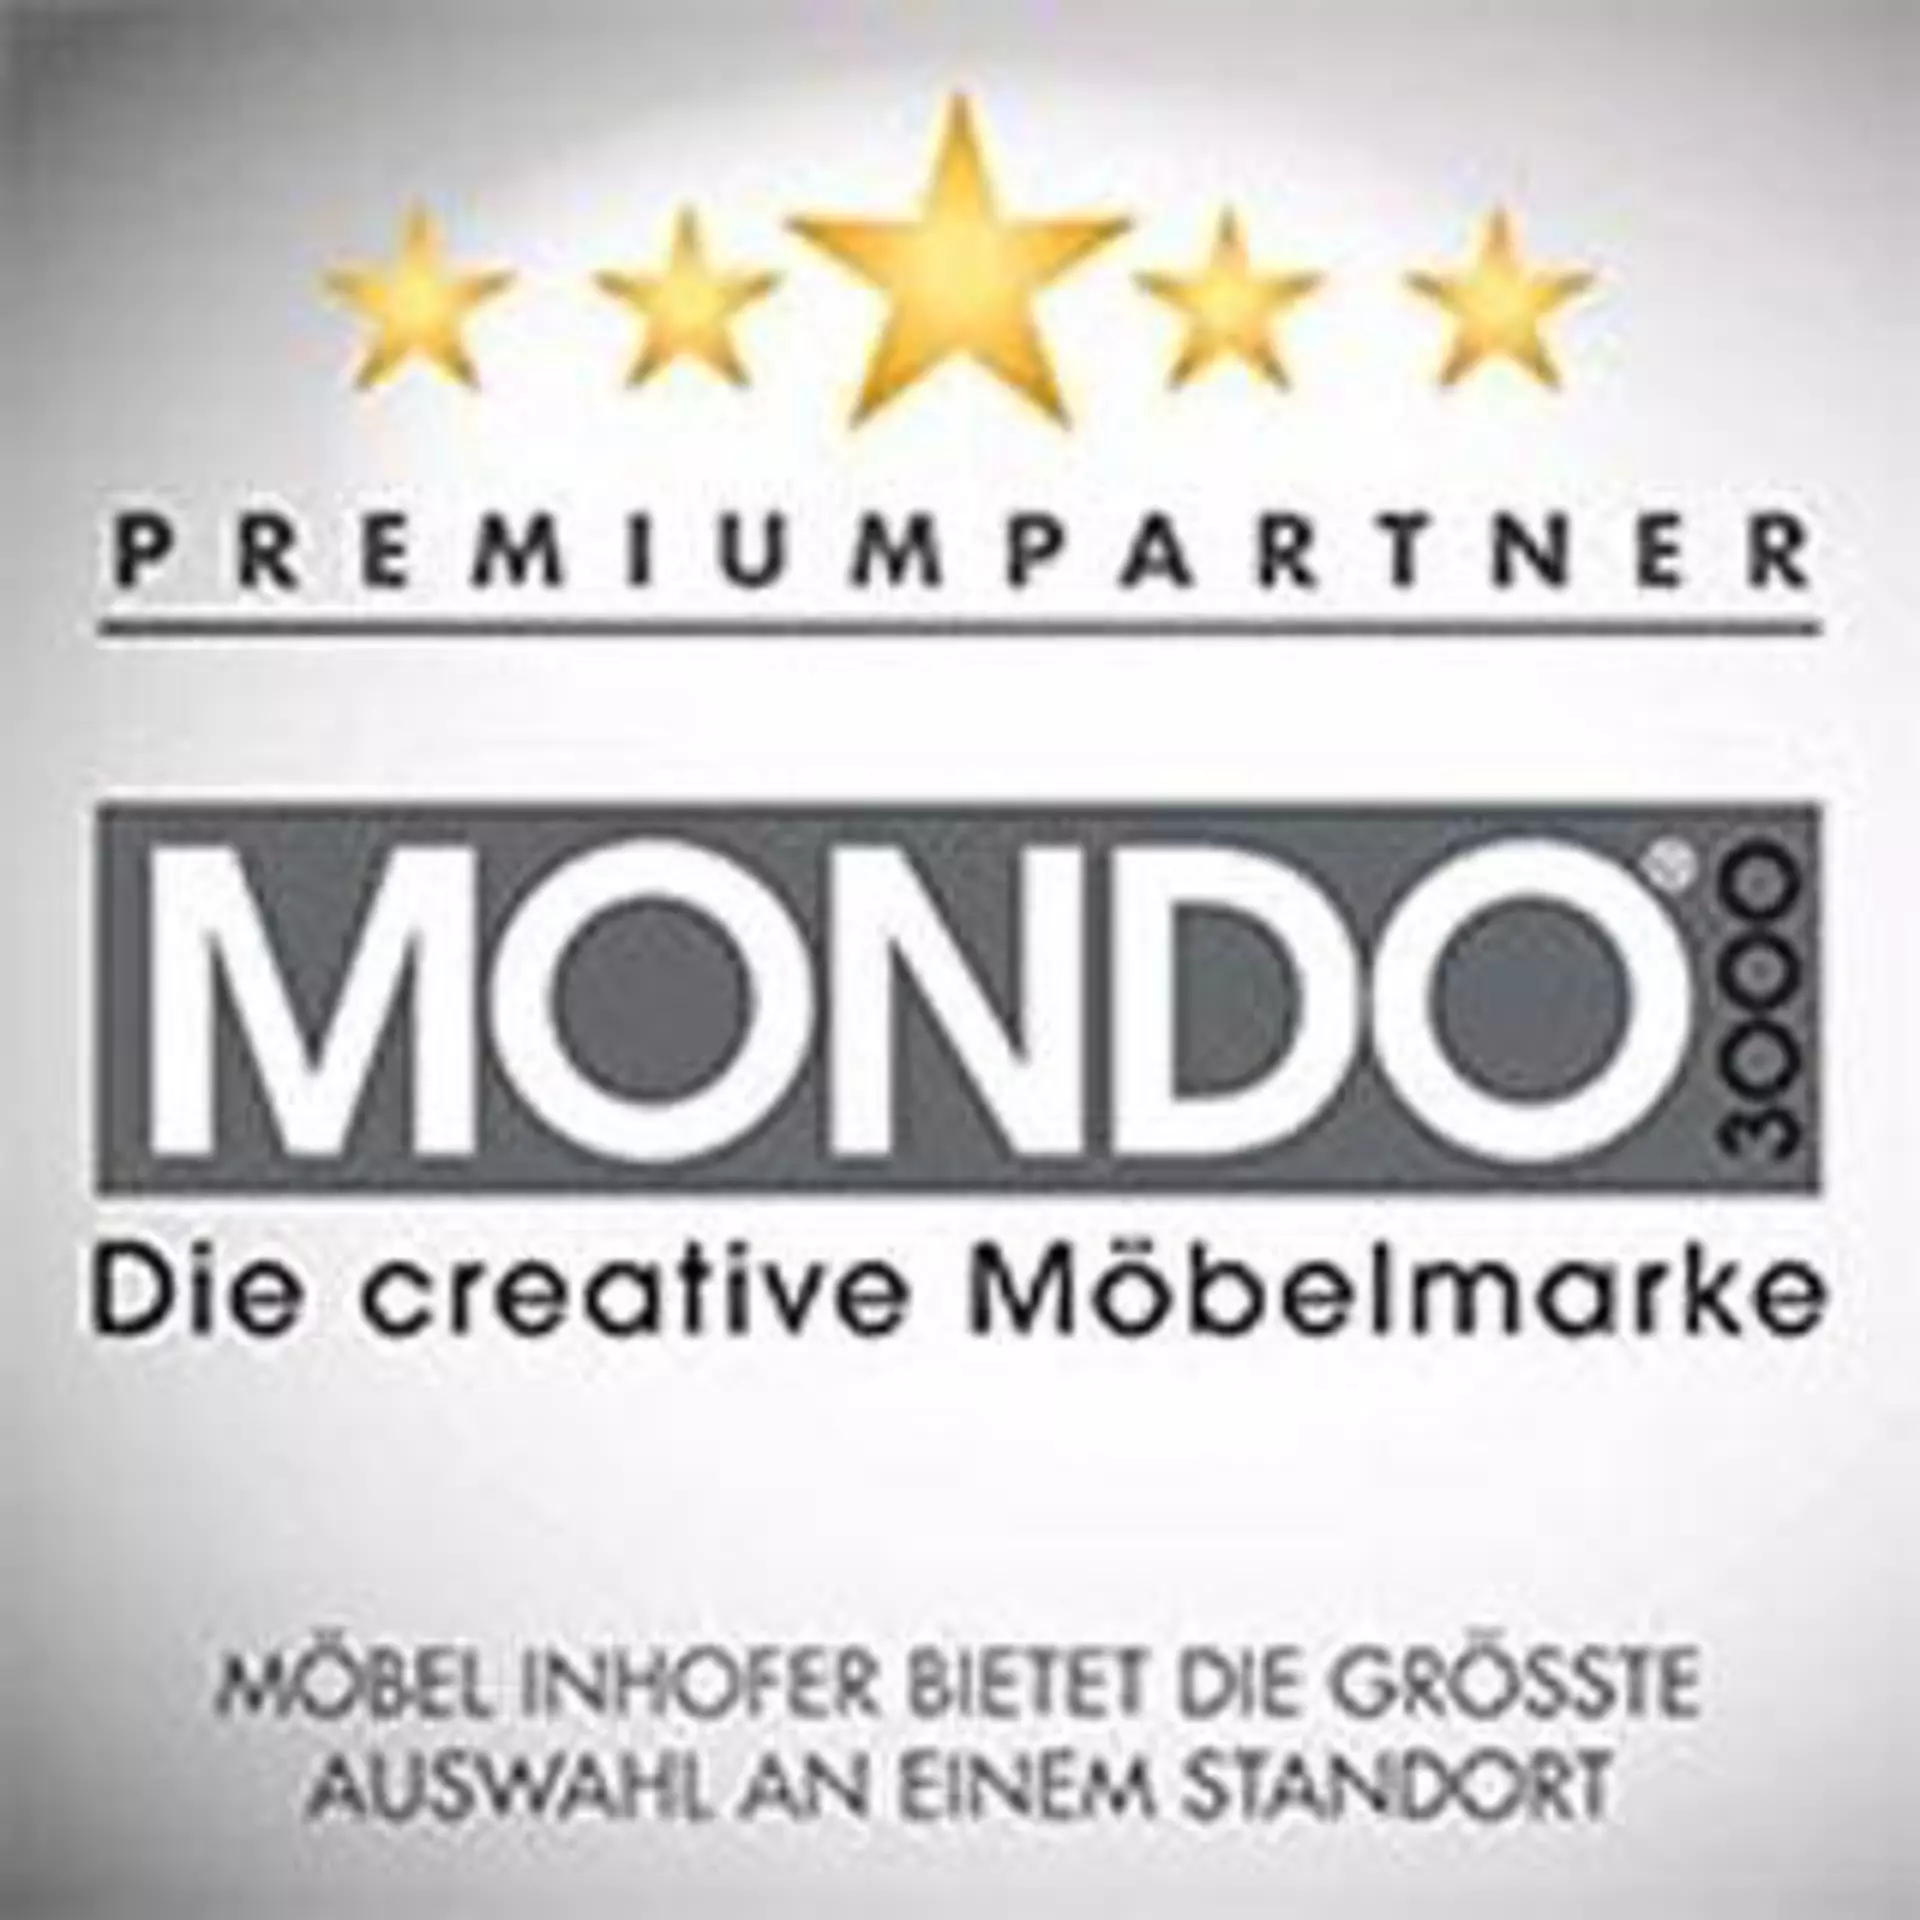 Marken-Logo "MONDO - Die creative Möbelmarke" PREMIUMPARTNER - Möbel INHOFER bietet die größte Auswahl an einem Standort